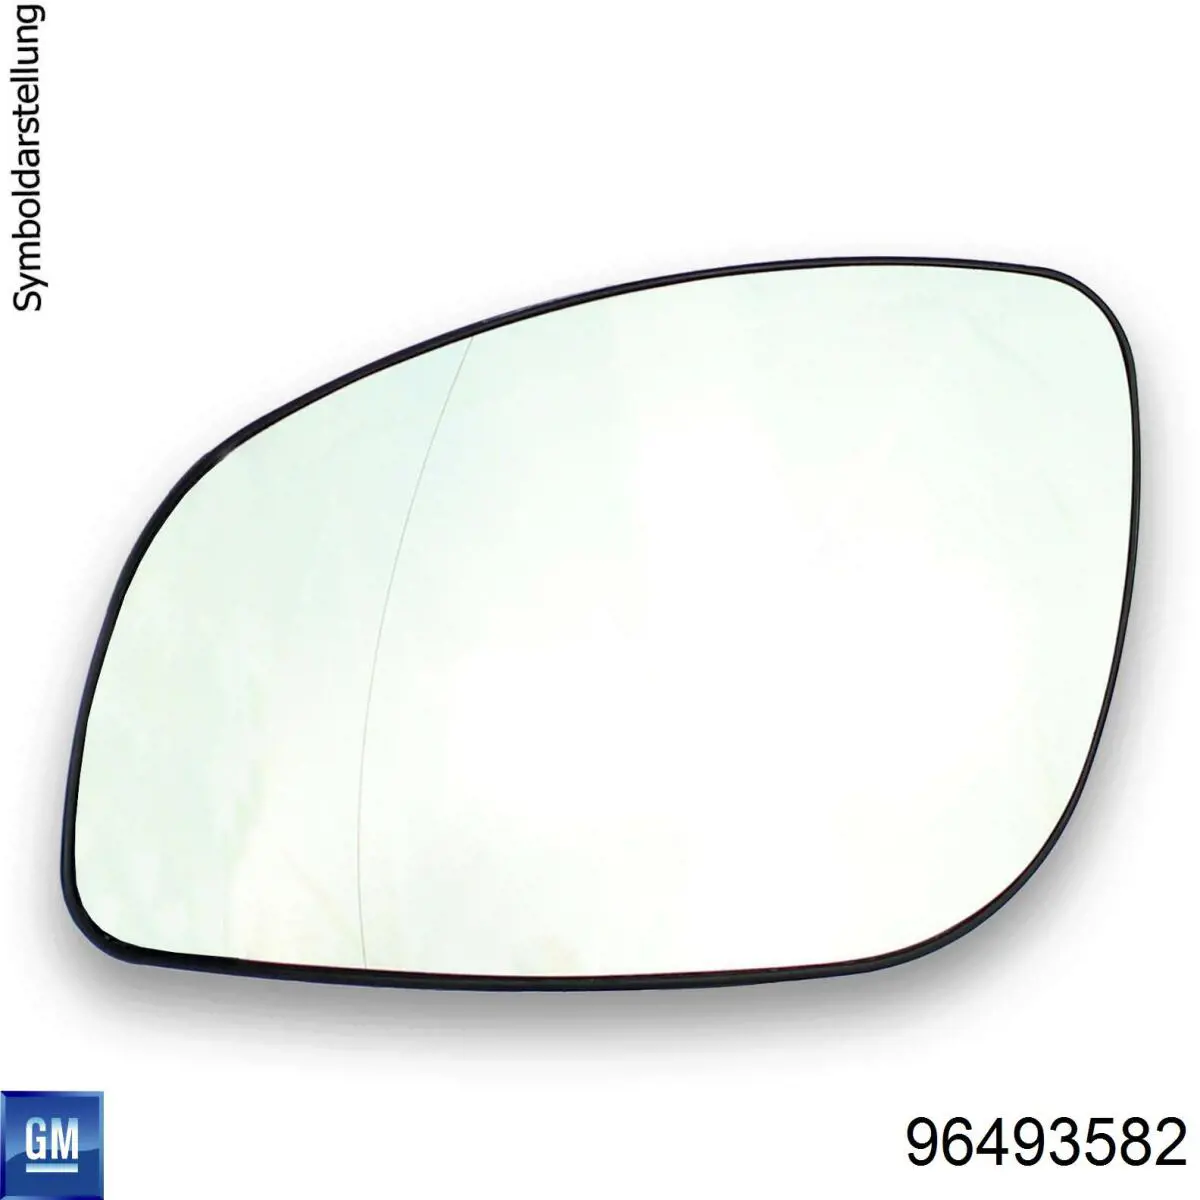 Зеркальный элемент зеркала заднего вида правого на Шевроле Авео (Chevrolet Aveo) T200 хэтчбек